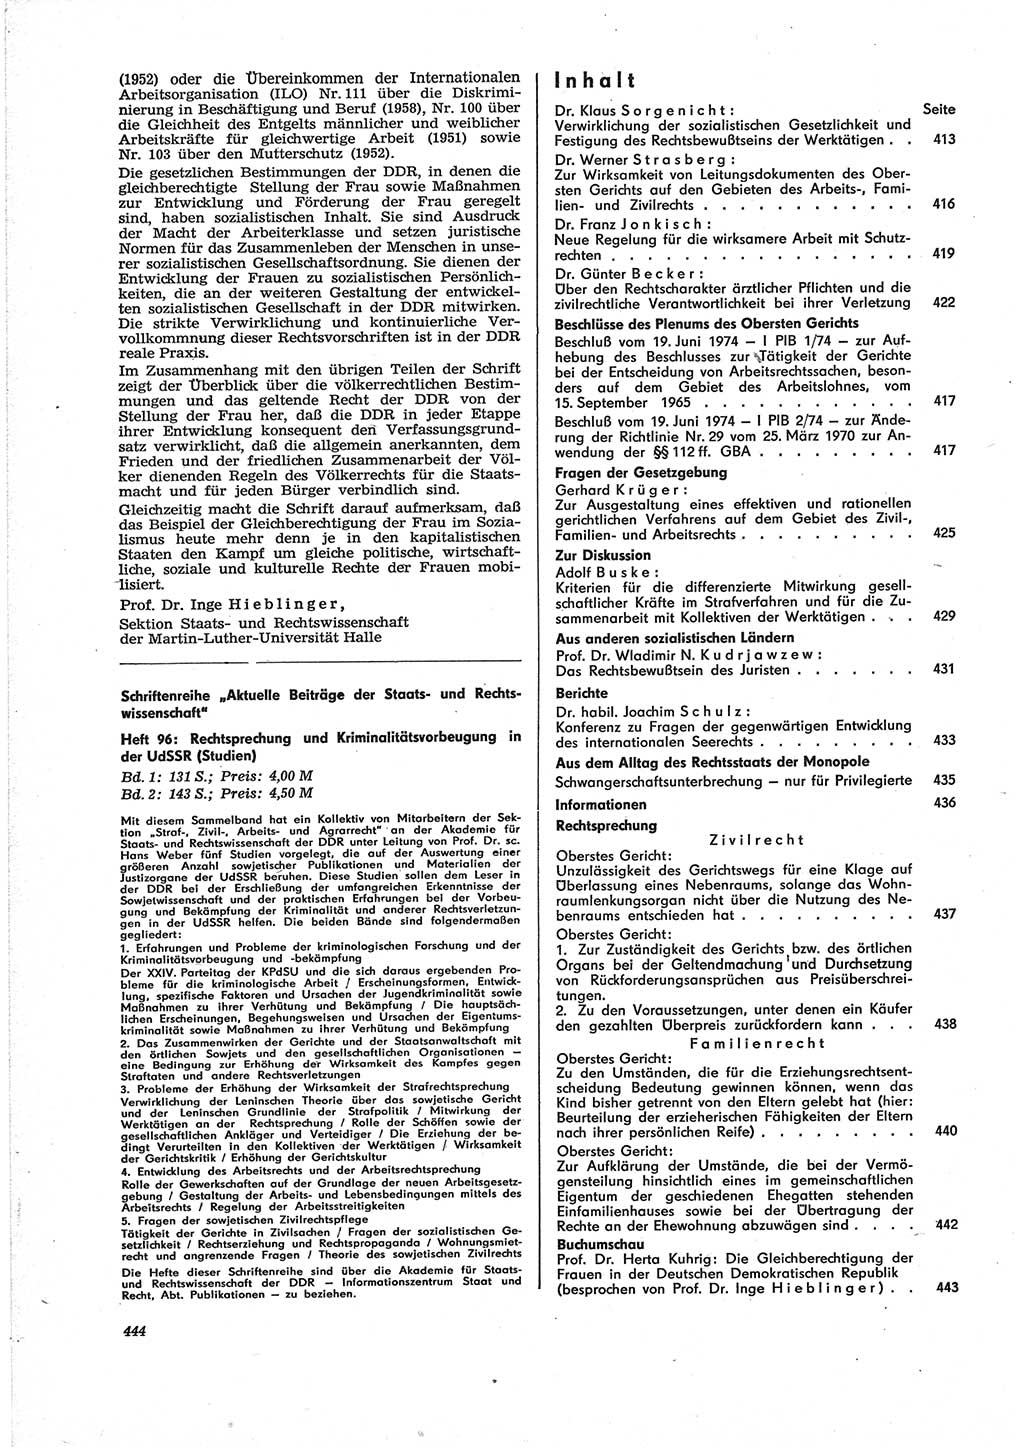 Neue Justiz (NJ), Zeitschrift für Recht und Rechtswissenschaft [Deutsche Demokratische Republik (DDR)], 28. Jahrgang 1974, Seite 444 (NJ DDR 1974, S. 444)